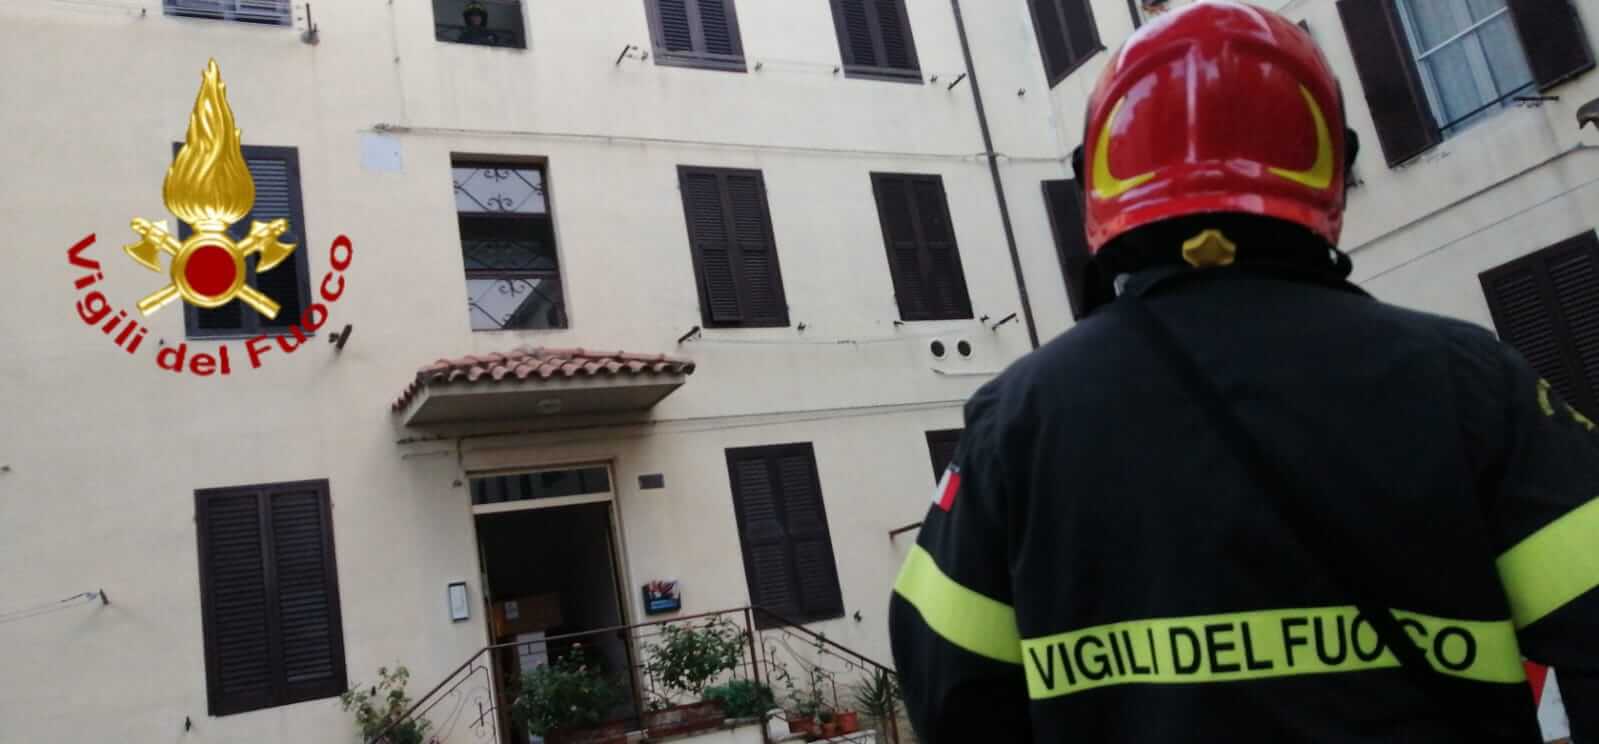 Evacuazione a Grosseto, i vigili del fuoco aiutano a svuotare gli appartamenti